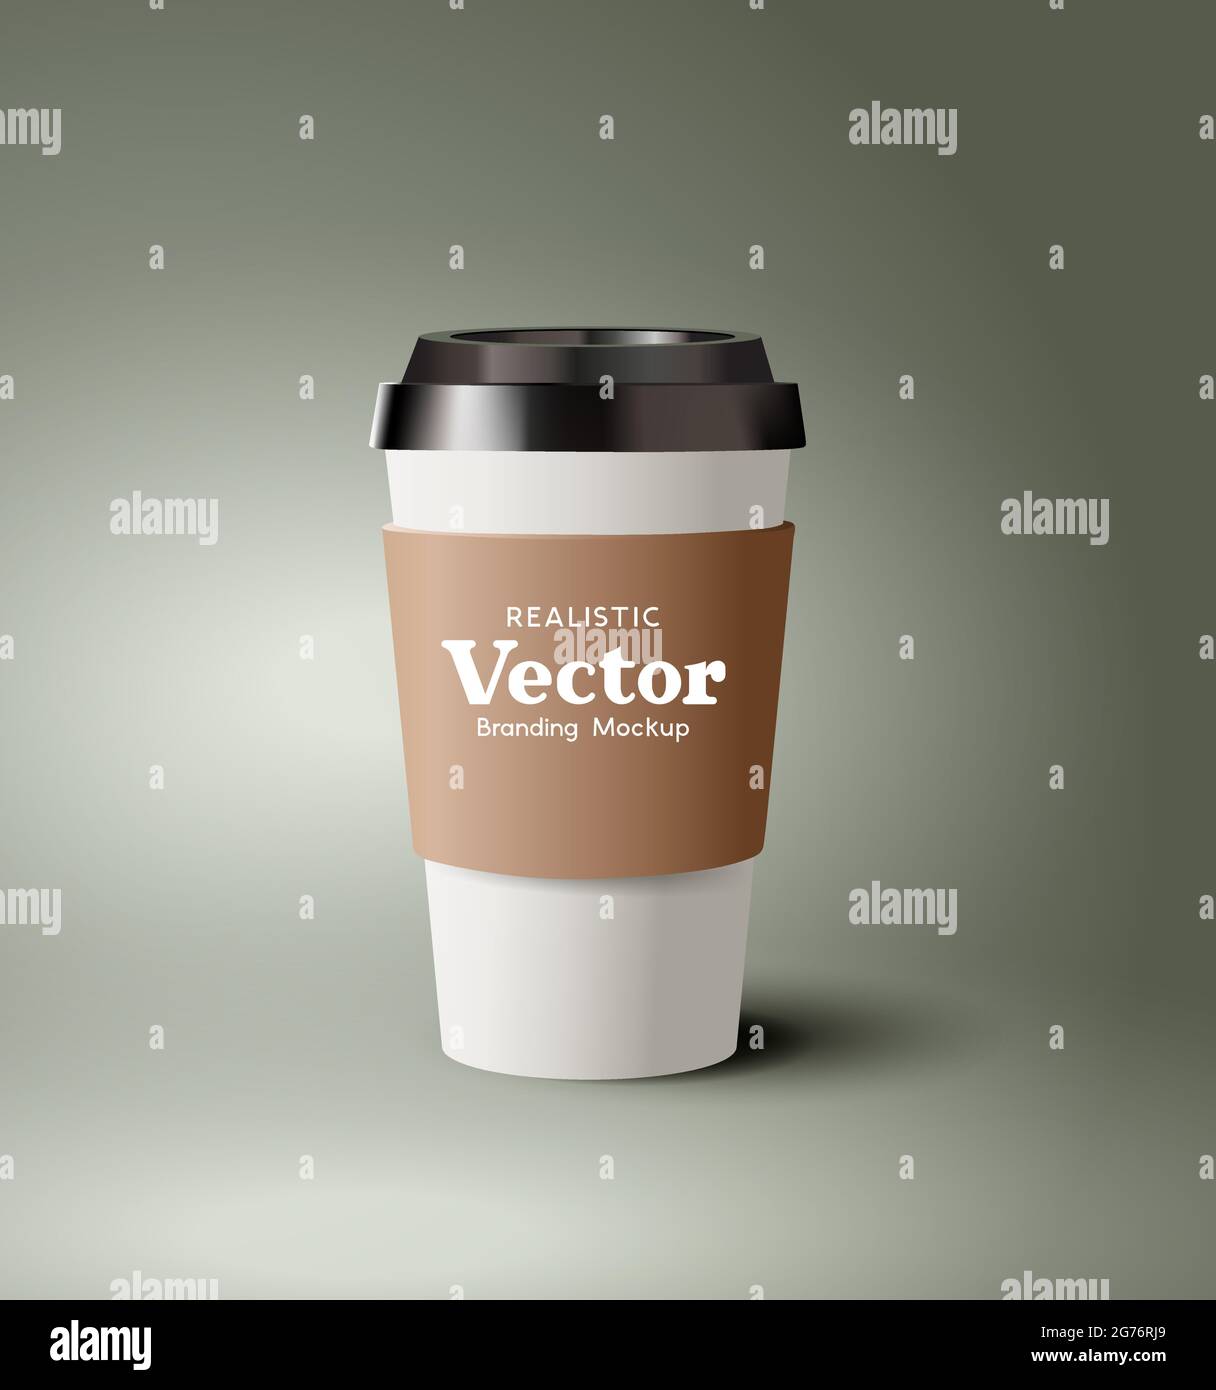 Eine realistische Pappkaffeetasse zum Mitnehmen mit Kunststoffdeckel. Moderne Getränke heiße Getränke Marketing-Vorlage Vektor-Illustration Stock Vektor